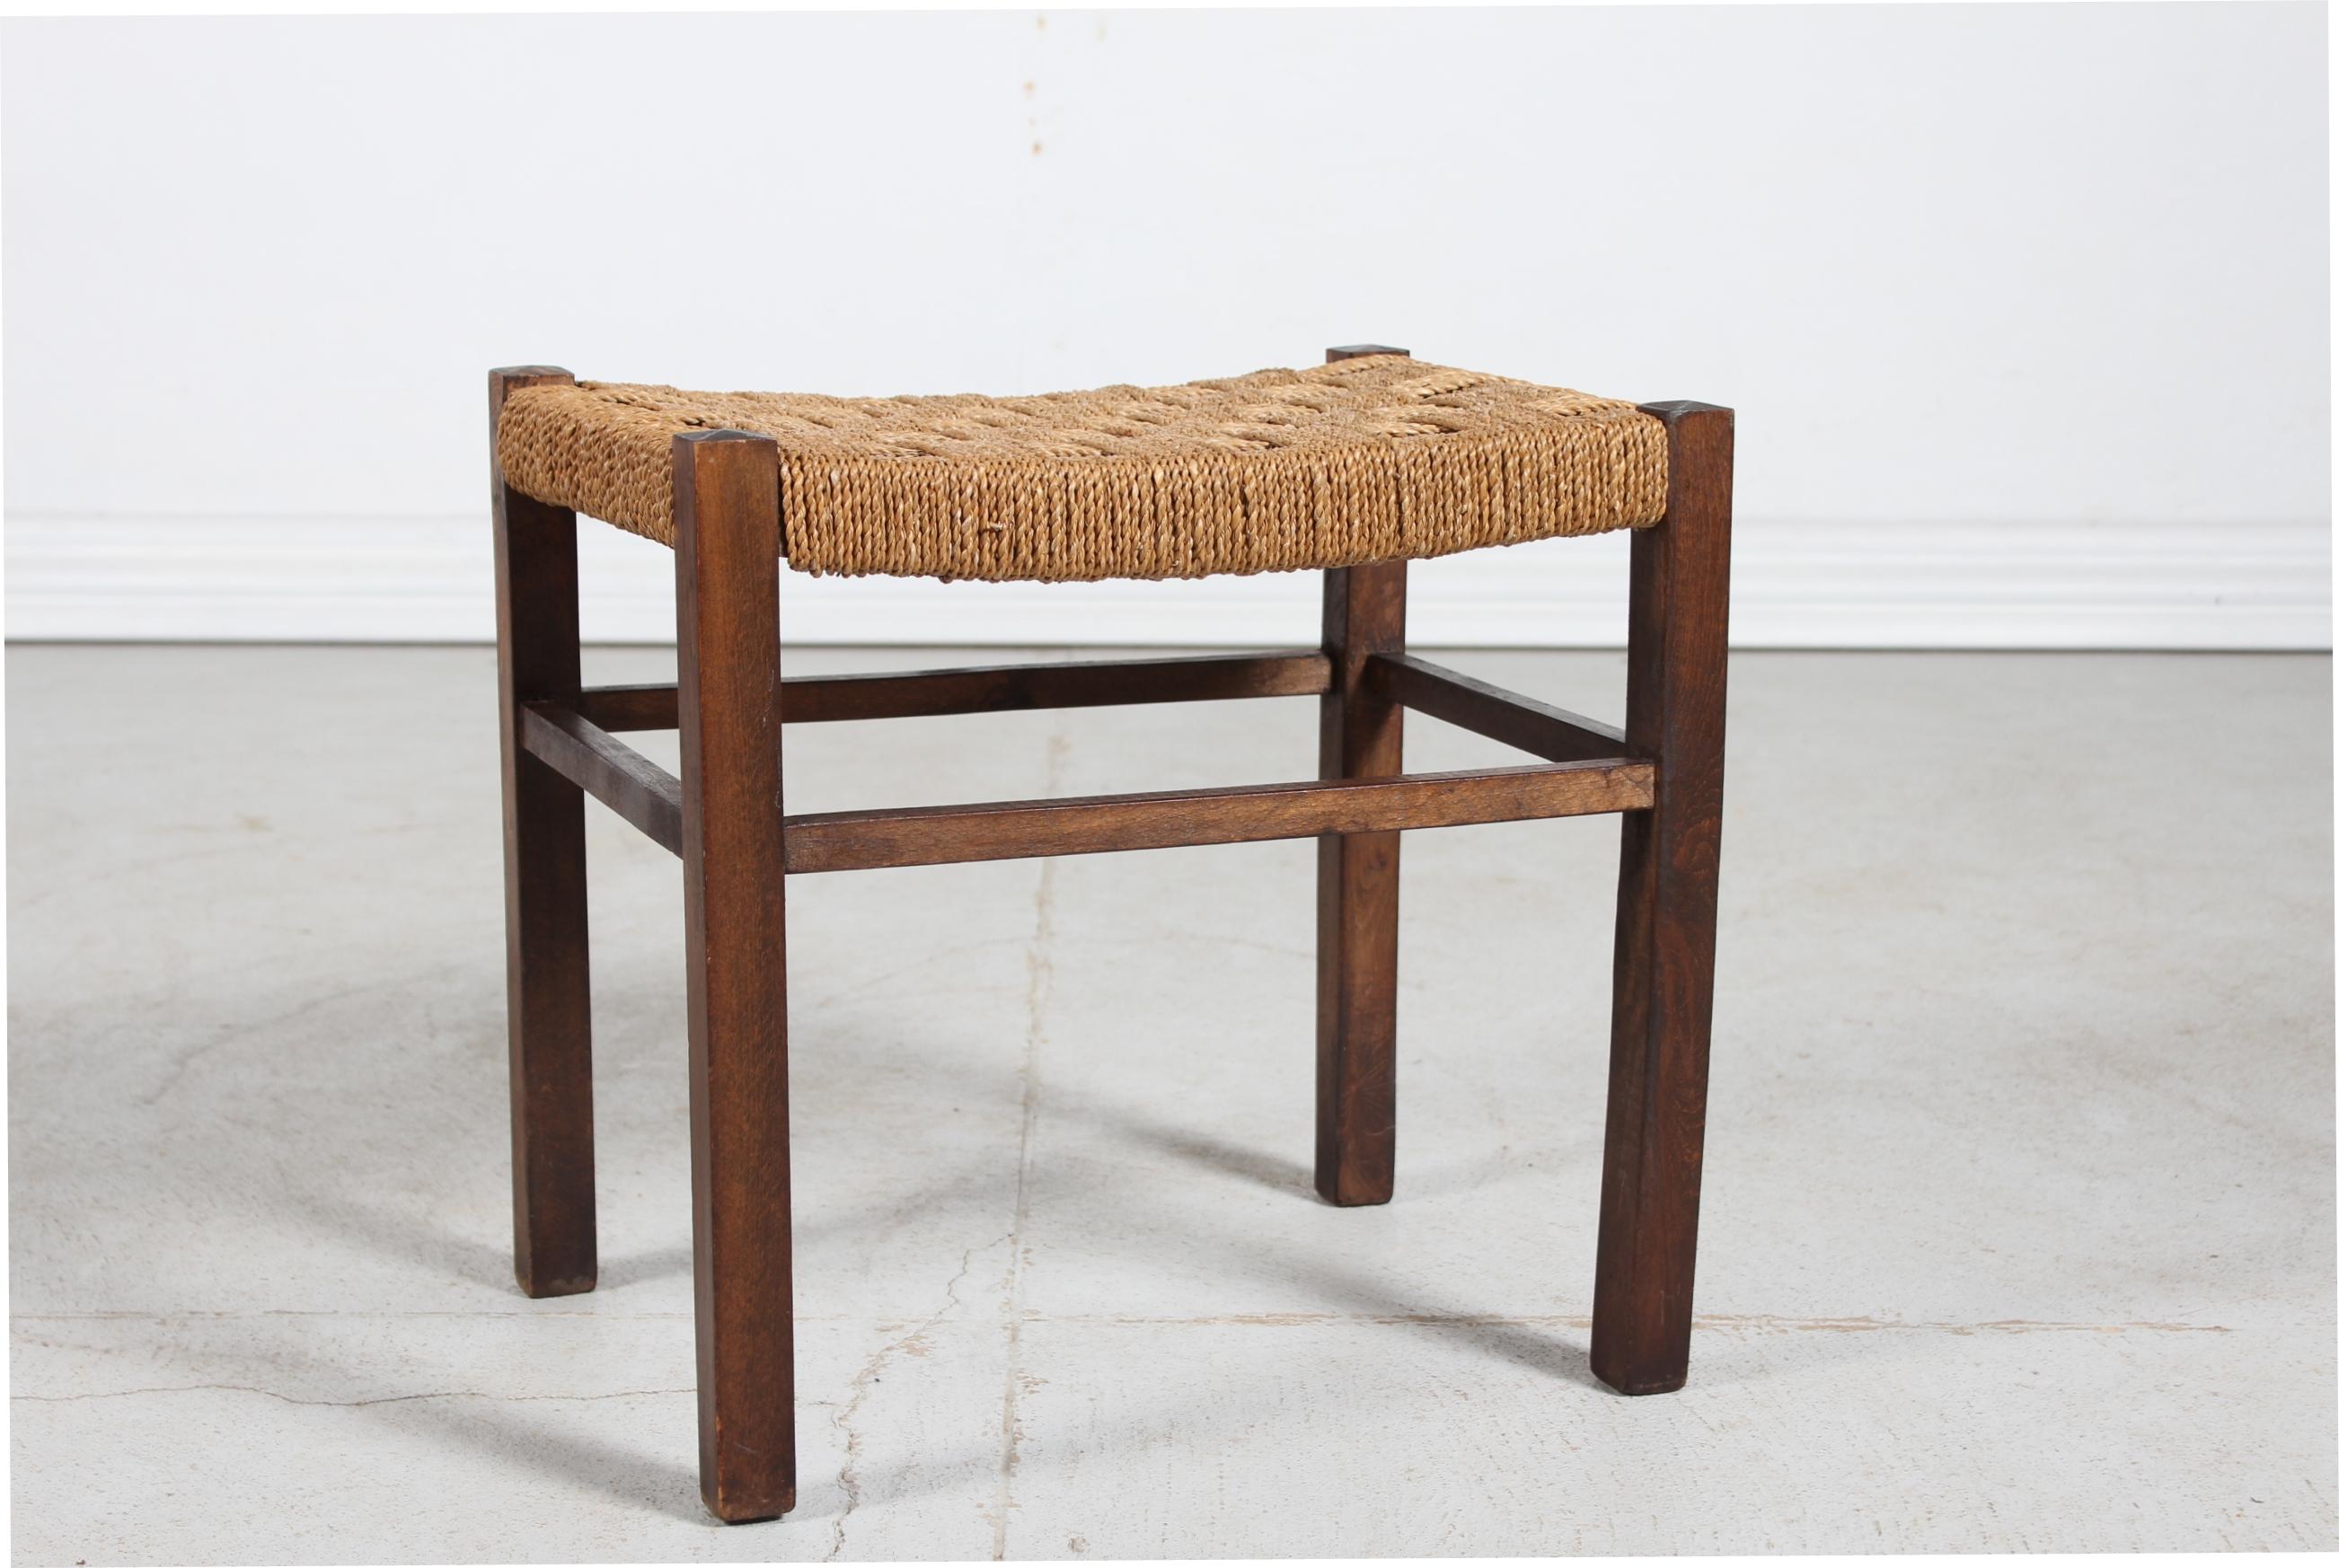 Tabouret Wabi Sabi fabriqué en Scandinavie dans les années 1950.
Le cadre est en bois massif teinté foncé et l'assise en corde tressée.

Le tabouret reste en très bon état vintage.


 